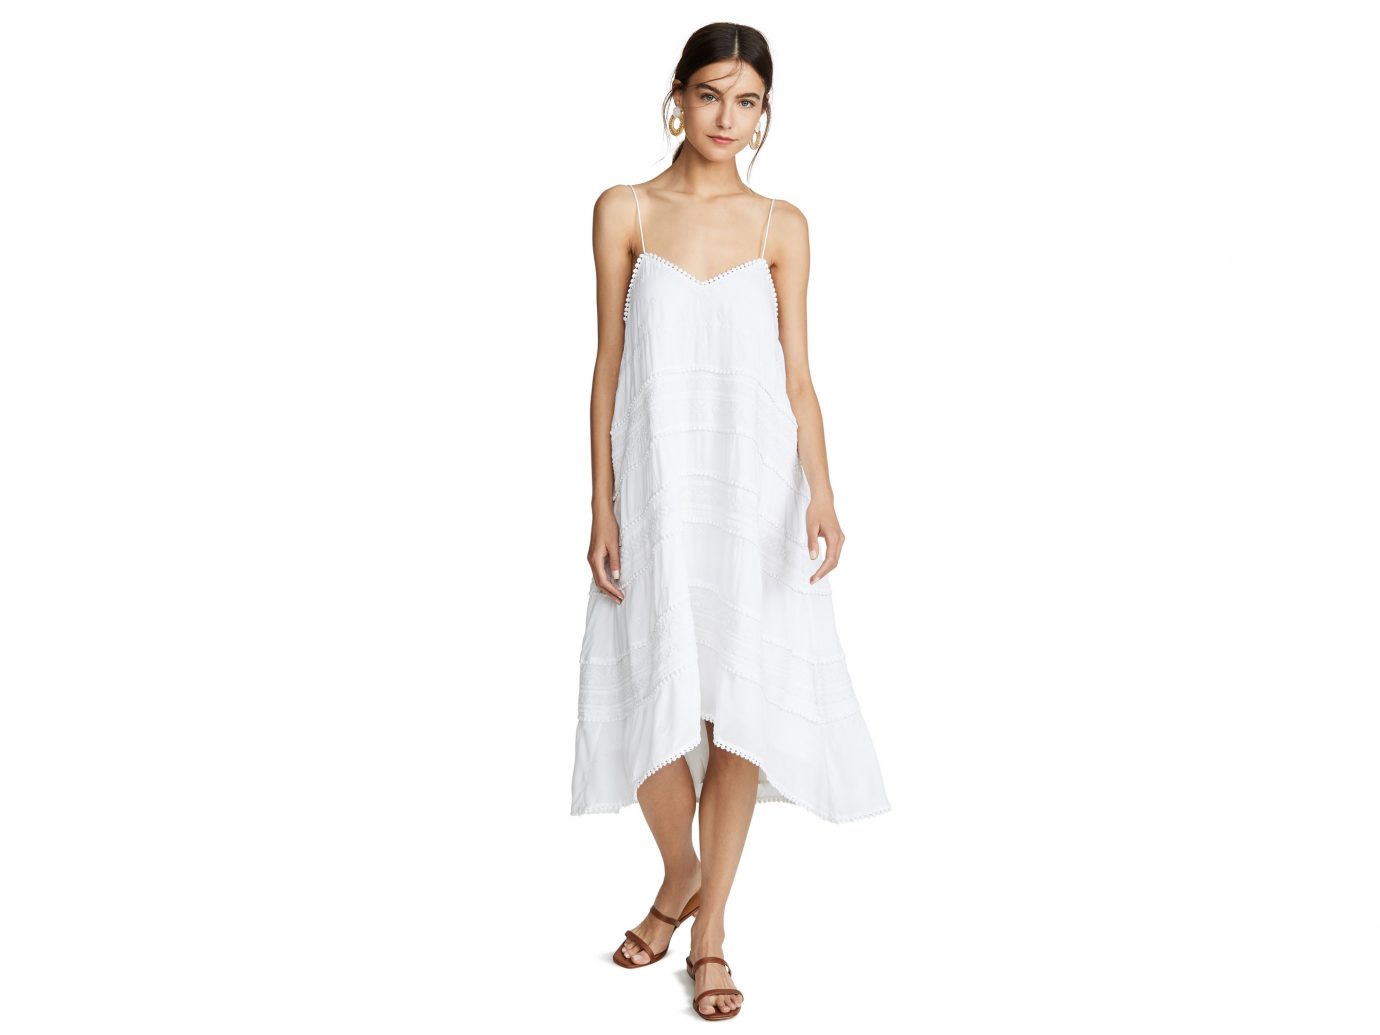 white frilly summer dress